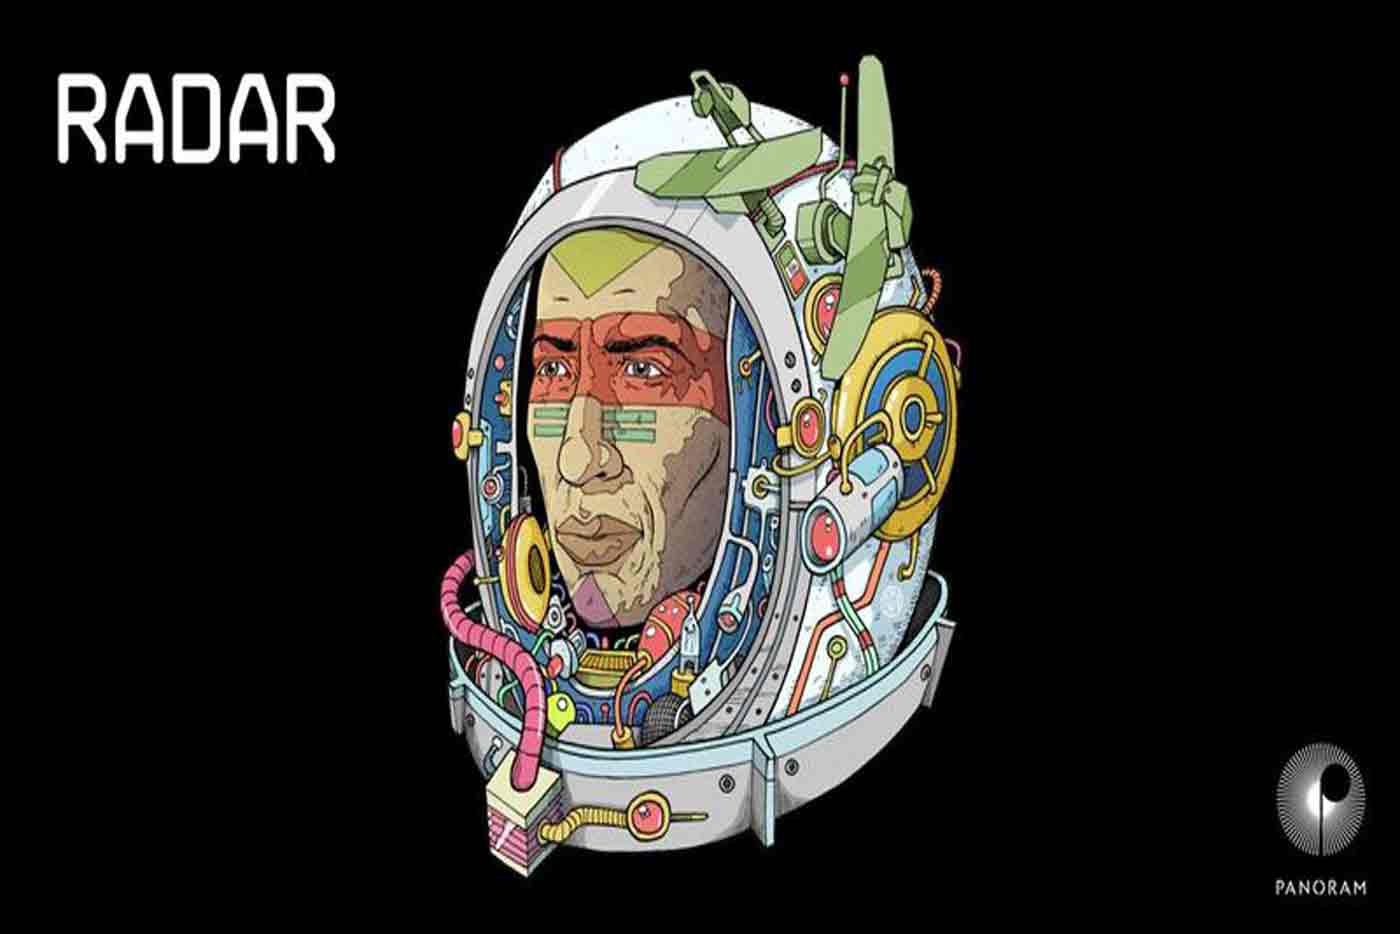 Sale al mercado "Radar Vol. 1", una recopilación artistas emergentes mexicanos